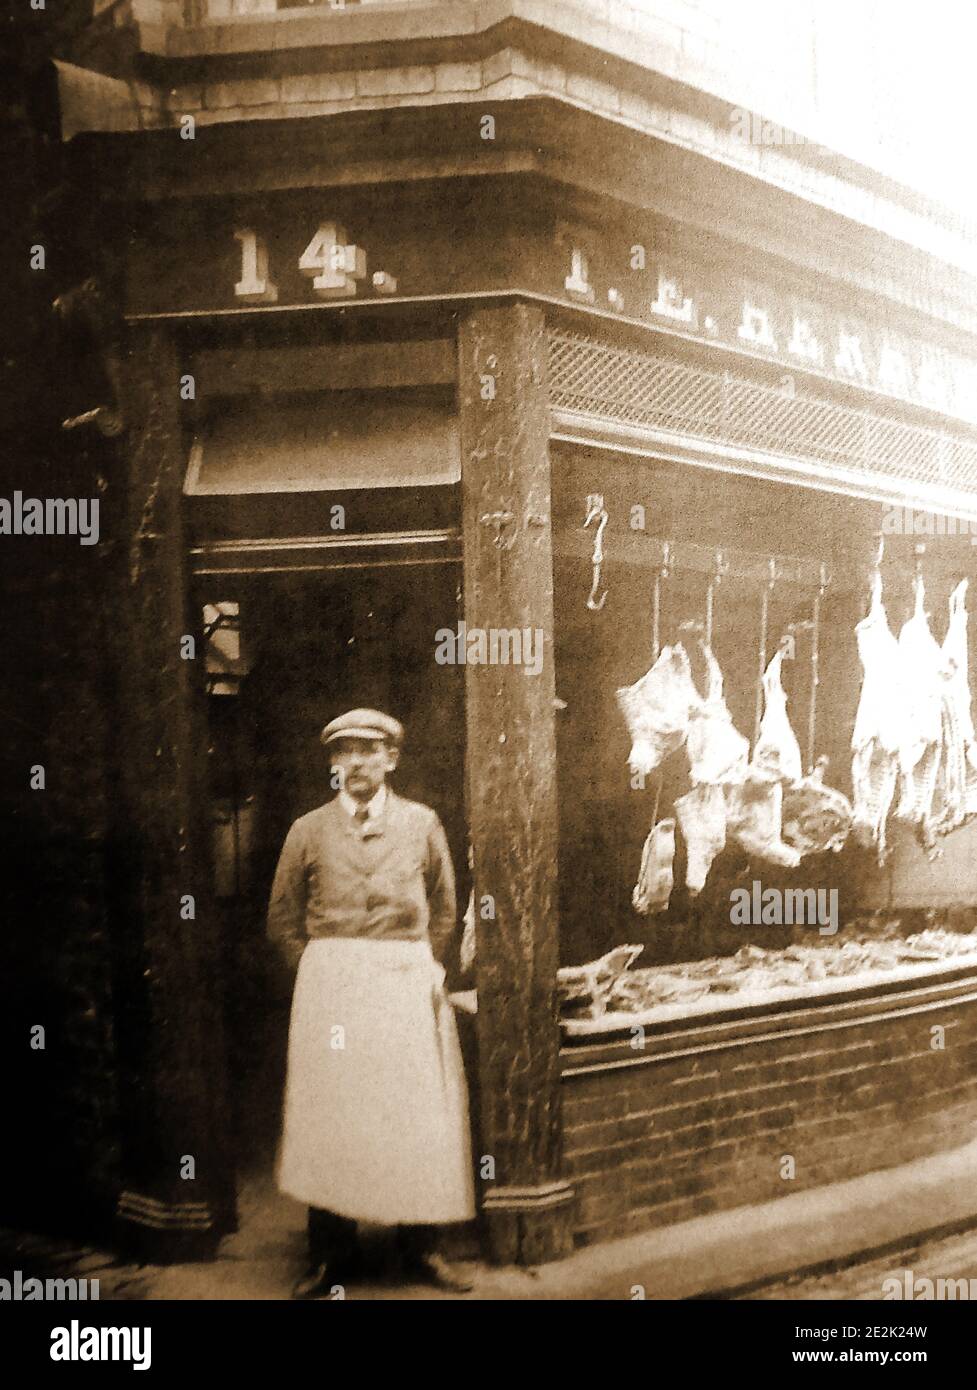 Una prima fotografia di un macellaio tradizionale a Whitby, nel Nord Yorkshire, Inghilterra. La finestra principale del negozio è stata aperta all'aria in modo da mantenere la carne fresca, una tecnica che era comune a quel tempo. Foto Stock